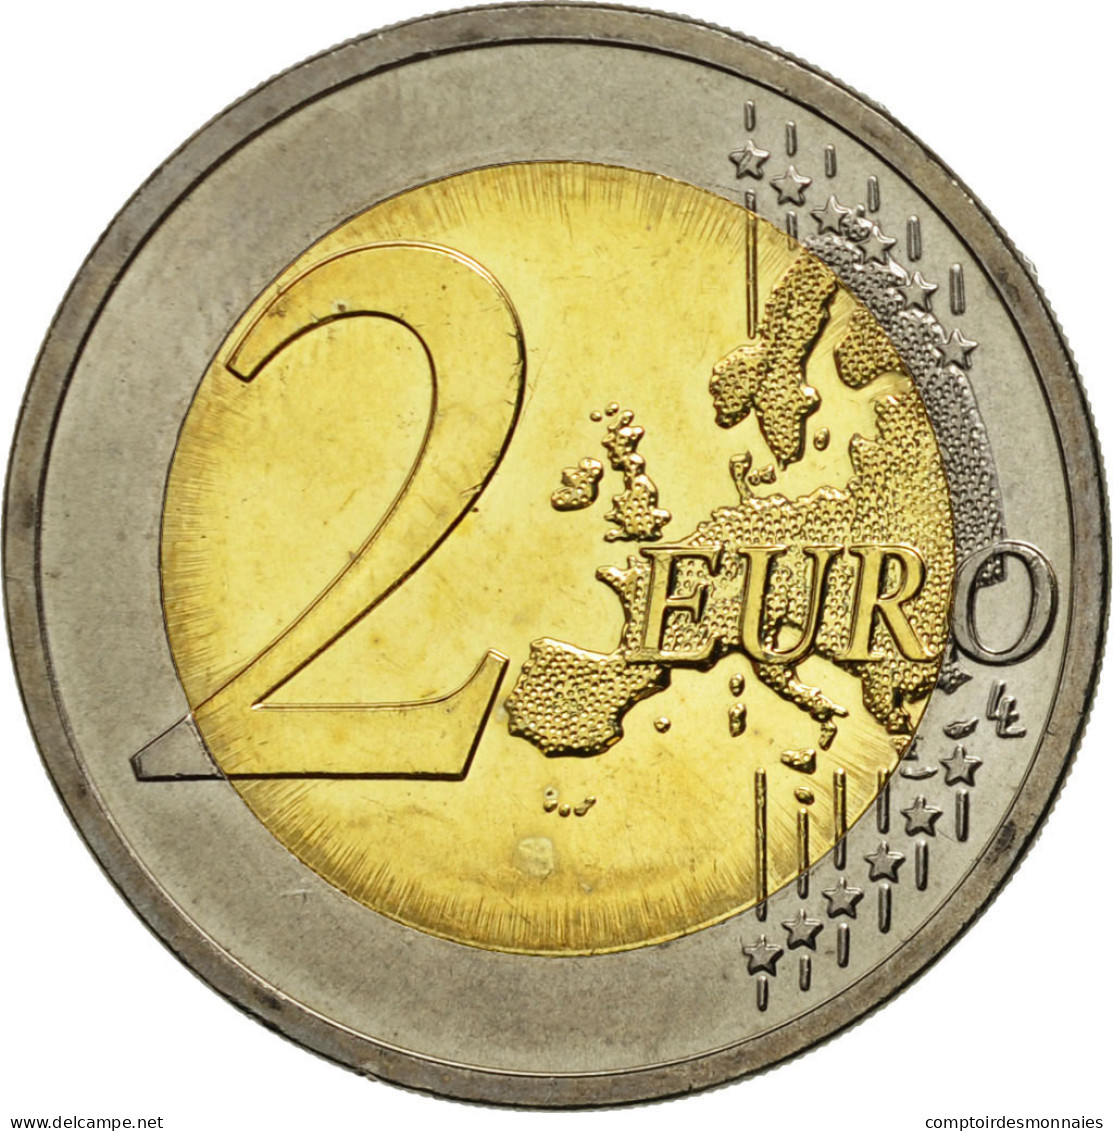 Slovénie, 2 Euro, 10 Years Euro, 2012, SPL, Bi-Metallic - Slovenië